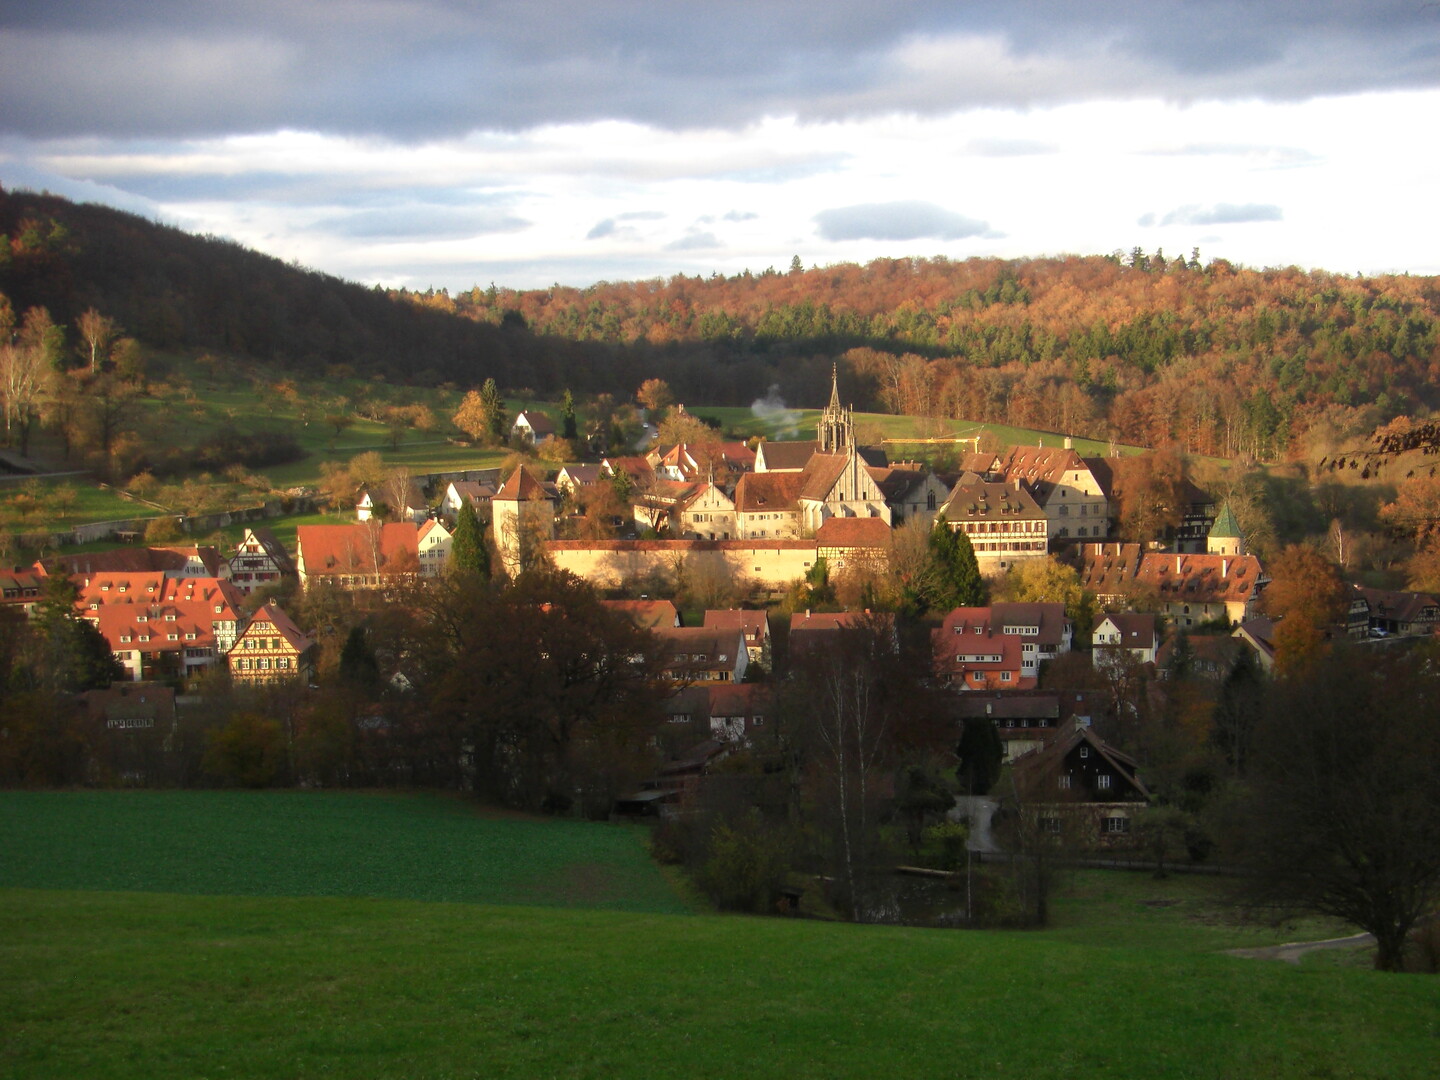 Dazwischen bietet sich nochmal ein schöner ausblick auf Bebenhausen mit dem Kloster.